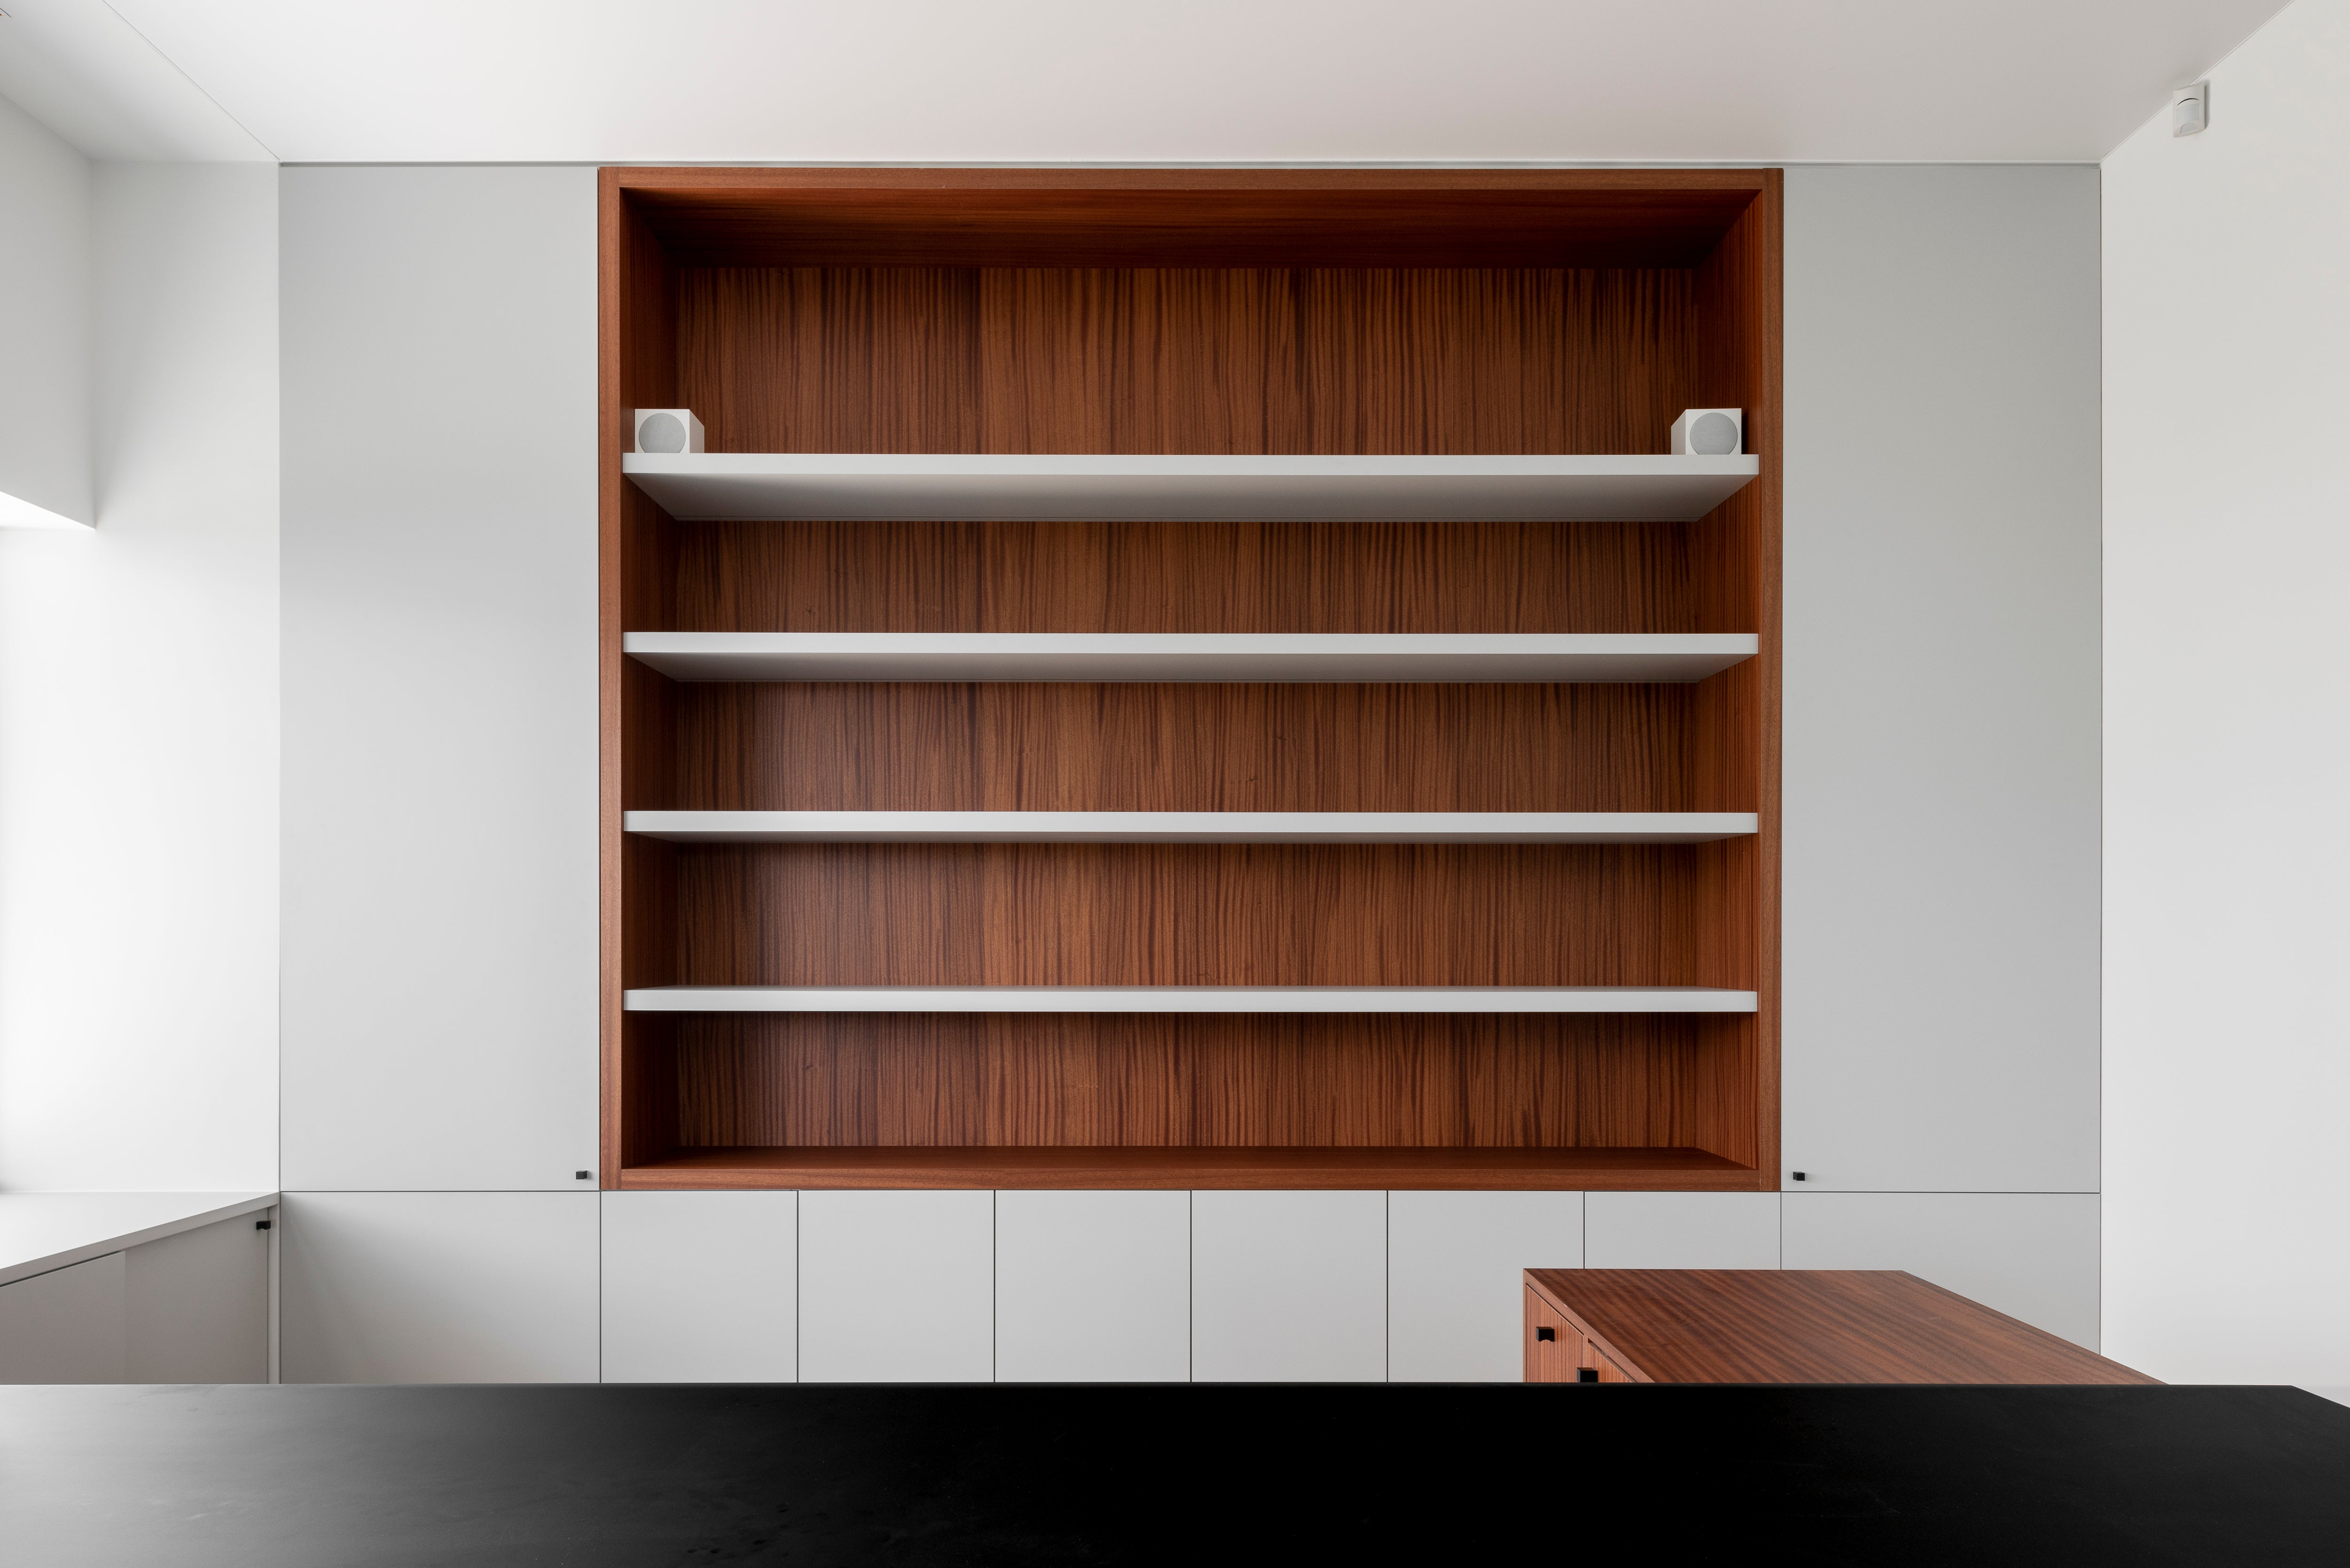 Utile - Decospan - wooden cabinets - veneer